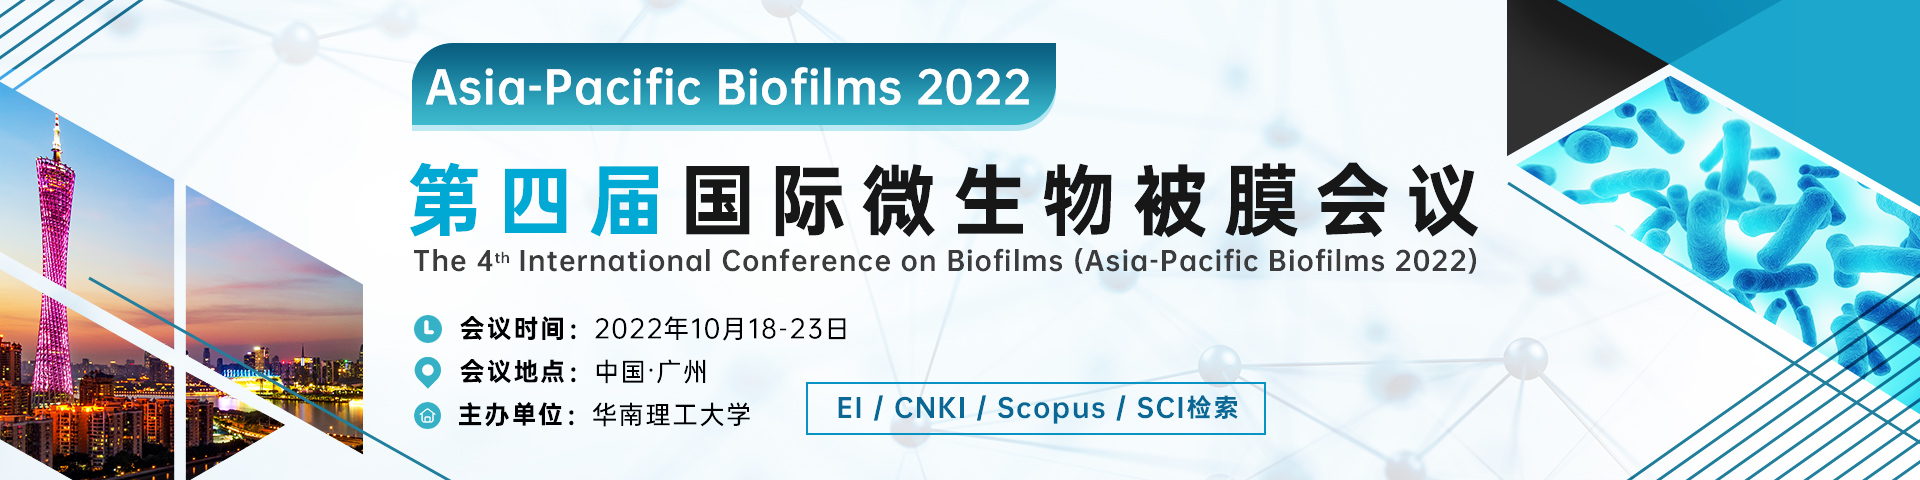 10月广州-Asia-Pacific-Biofilms-艾思平台-尹旭舟20220518.jpg